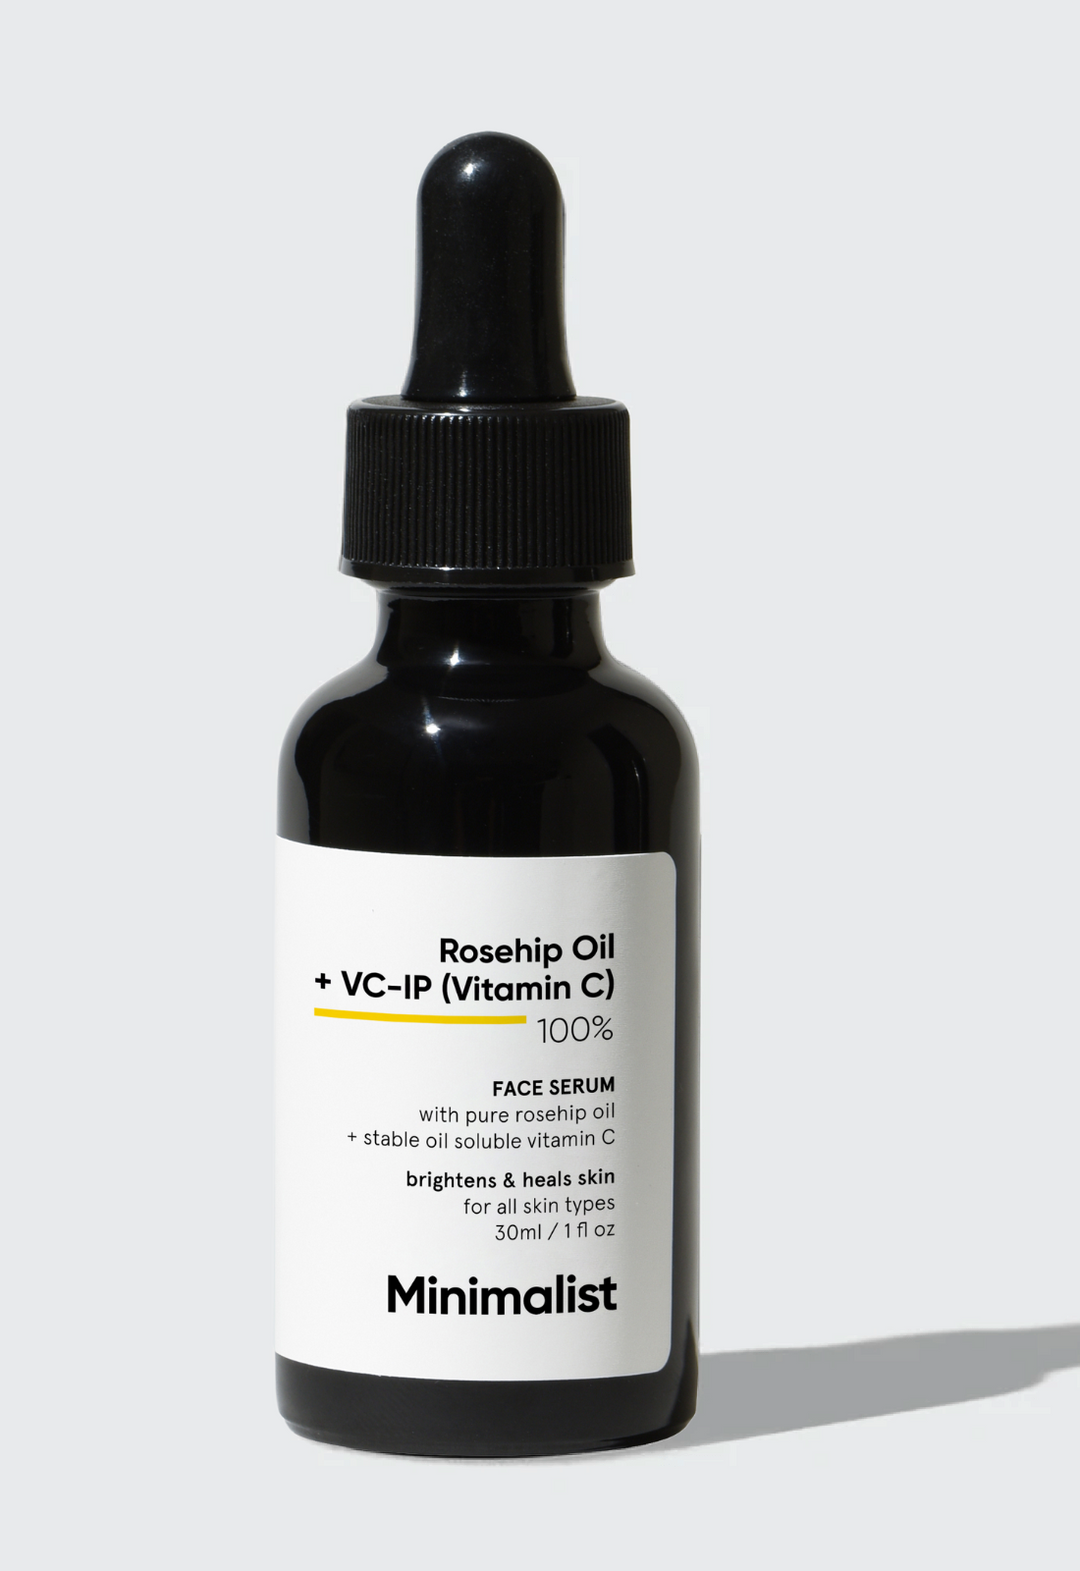 Minimalist Rosehip oil + VC-IP (Vitamin C) 100% Face Serum (30ml) Minimalist